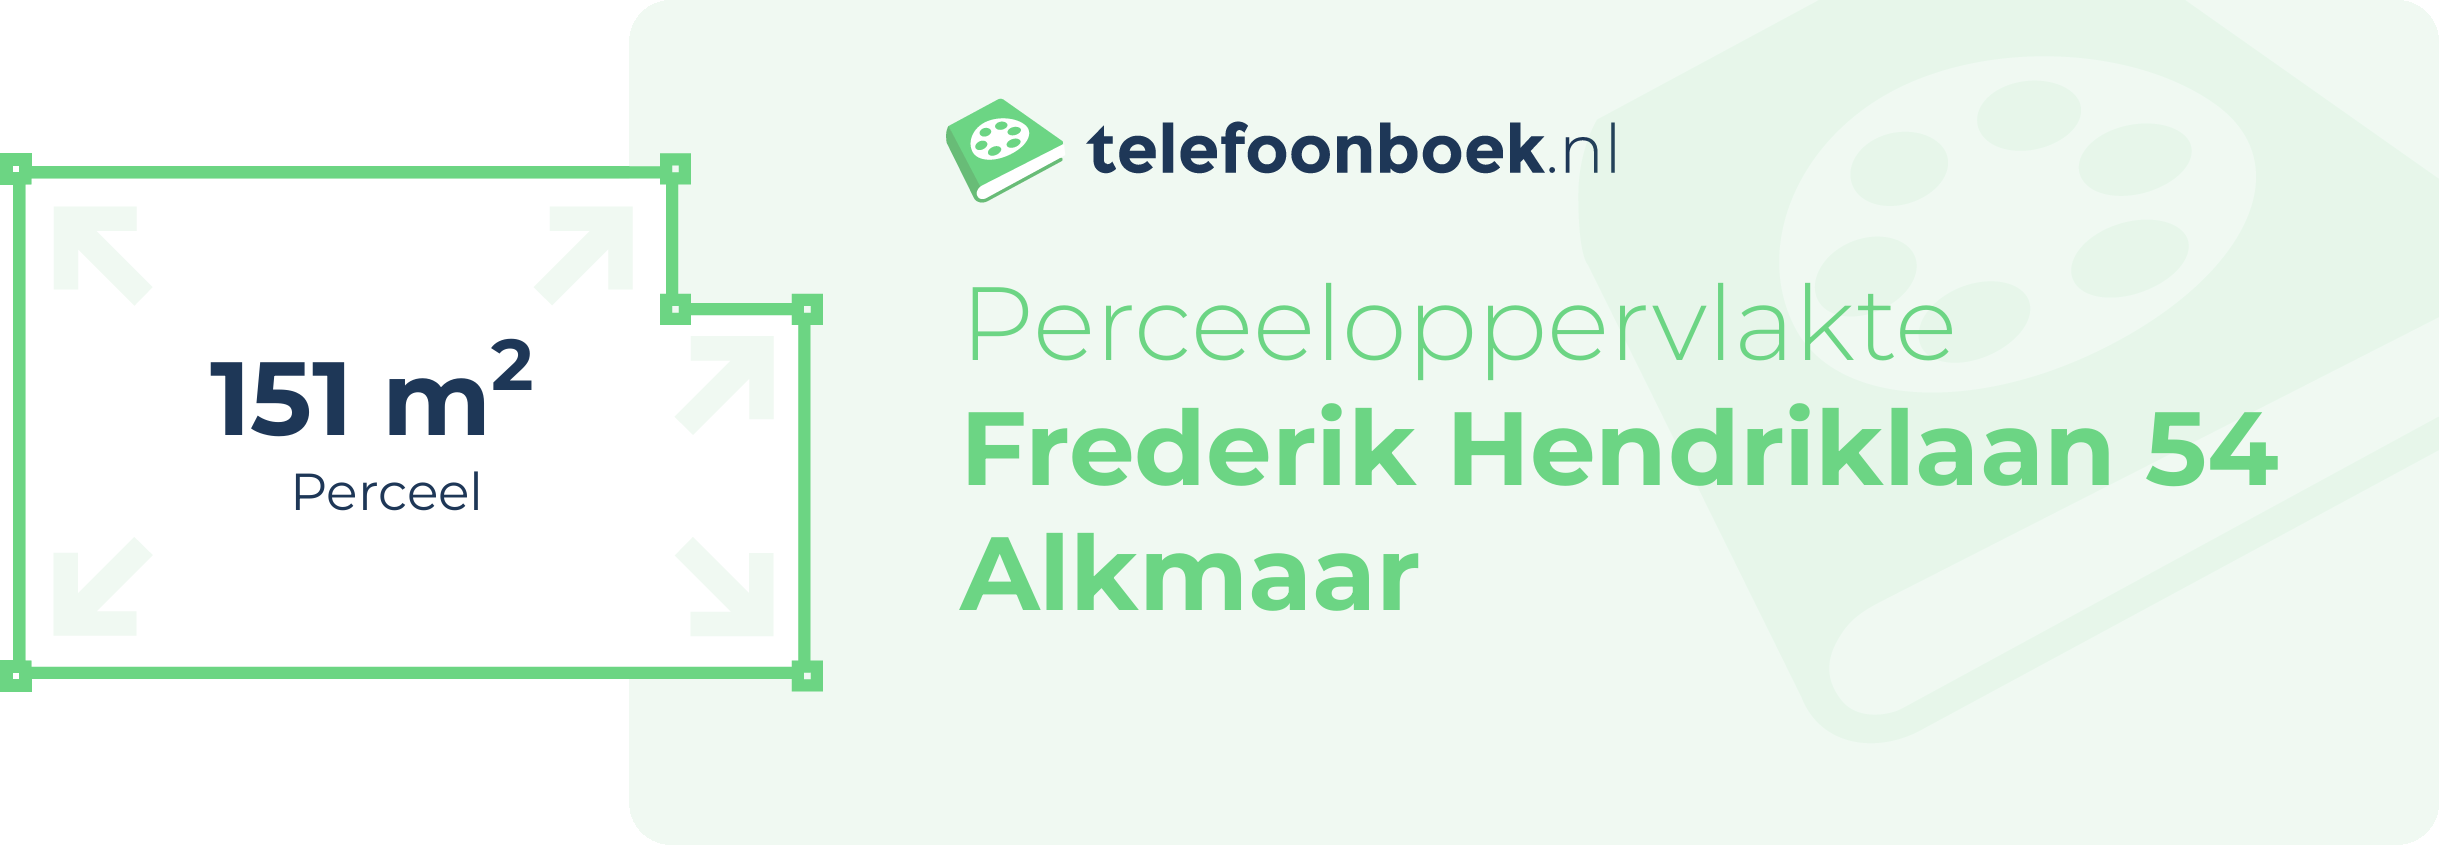 Perceeloppervlakte Frederik Hendriklaan 54 Alkmaar